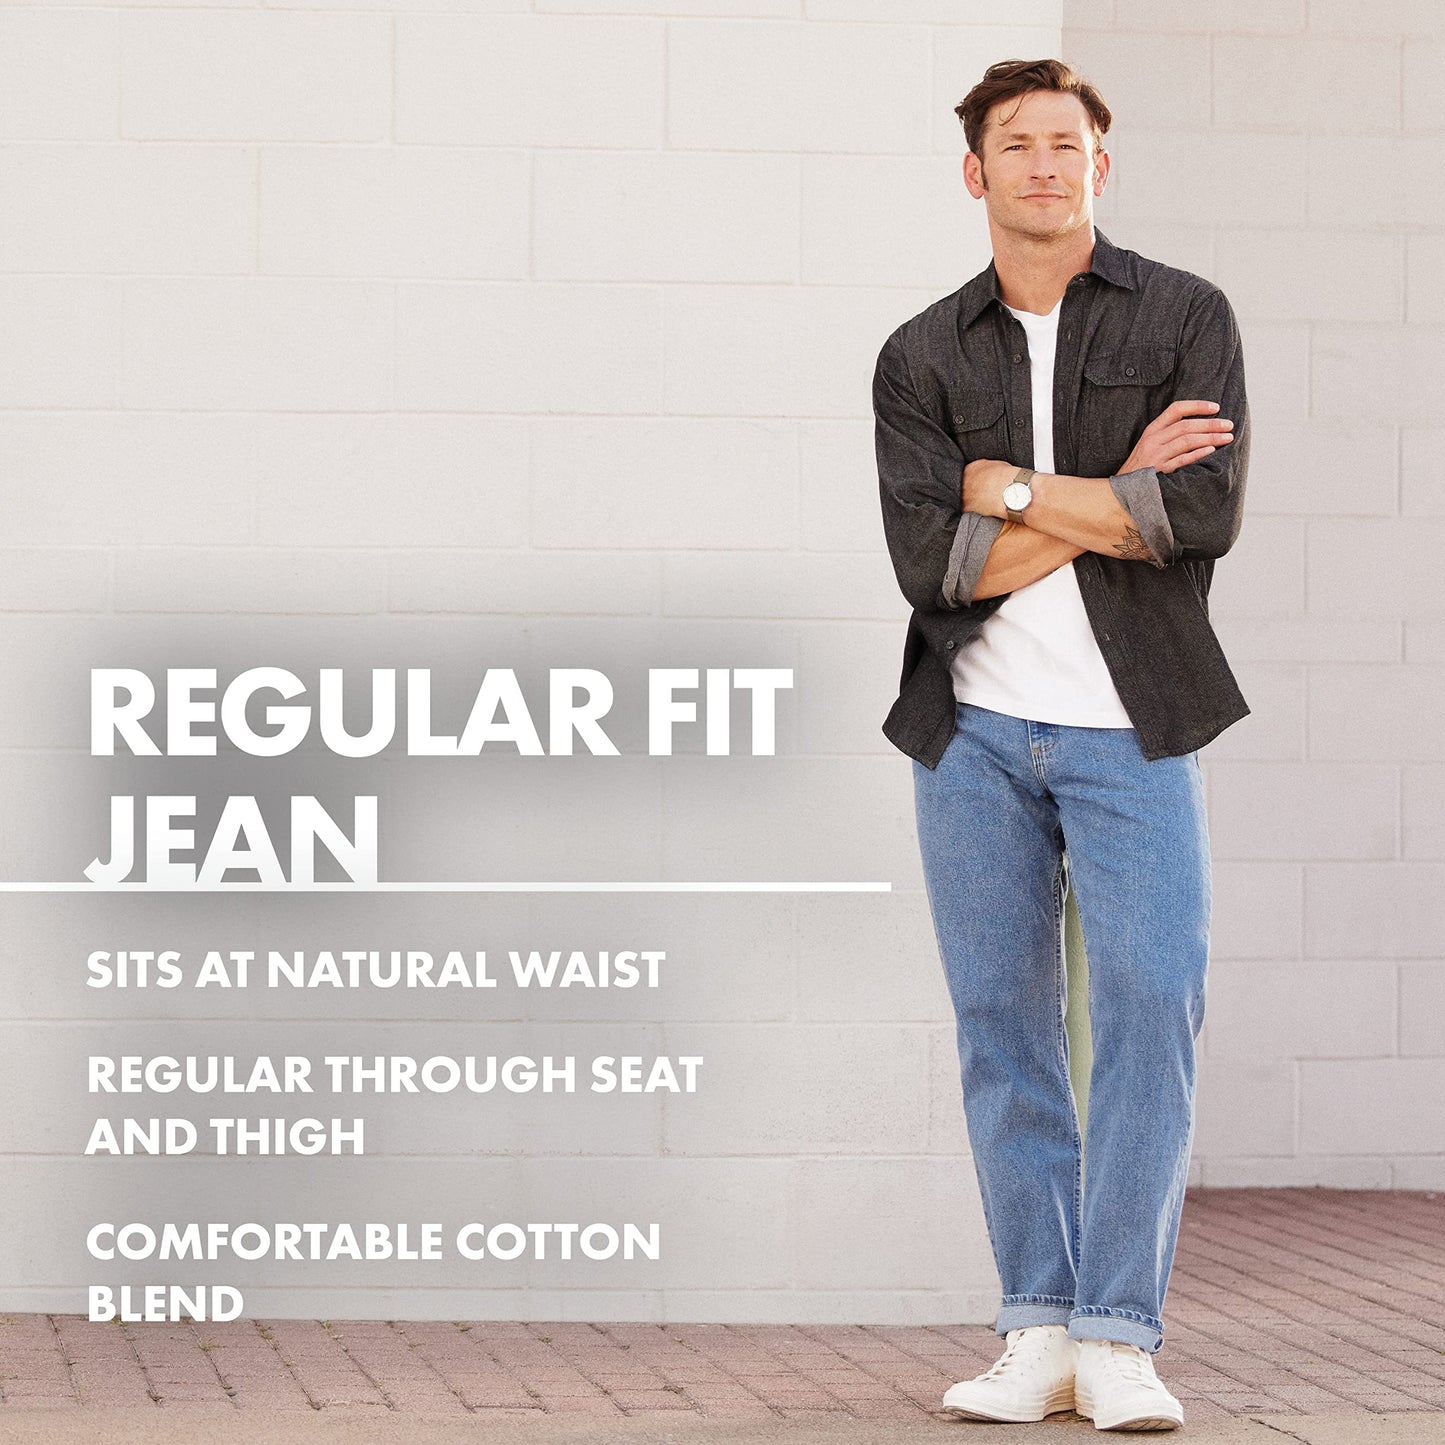 Wrangler Authentics Men's Classic 5-Pocket Regular Fit Cotton Jean, Vintage Blue Grey, 38W x 28L